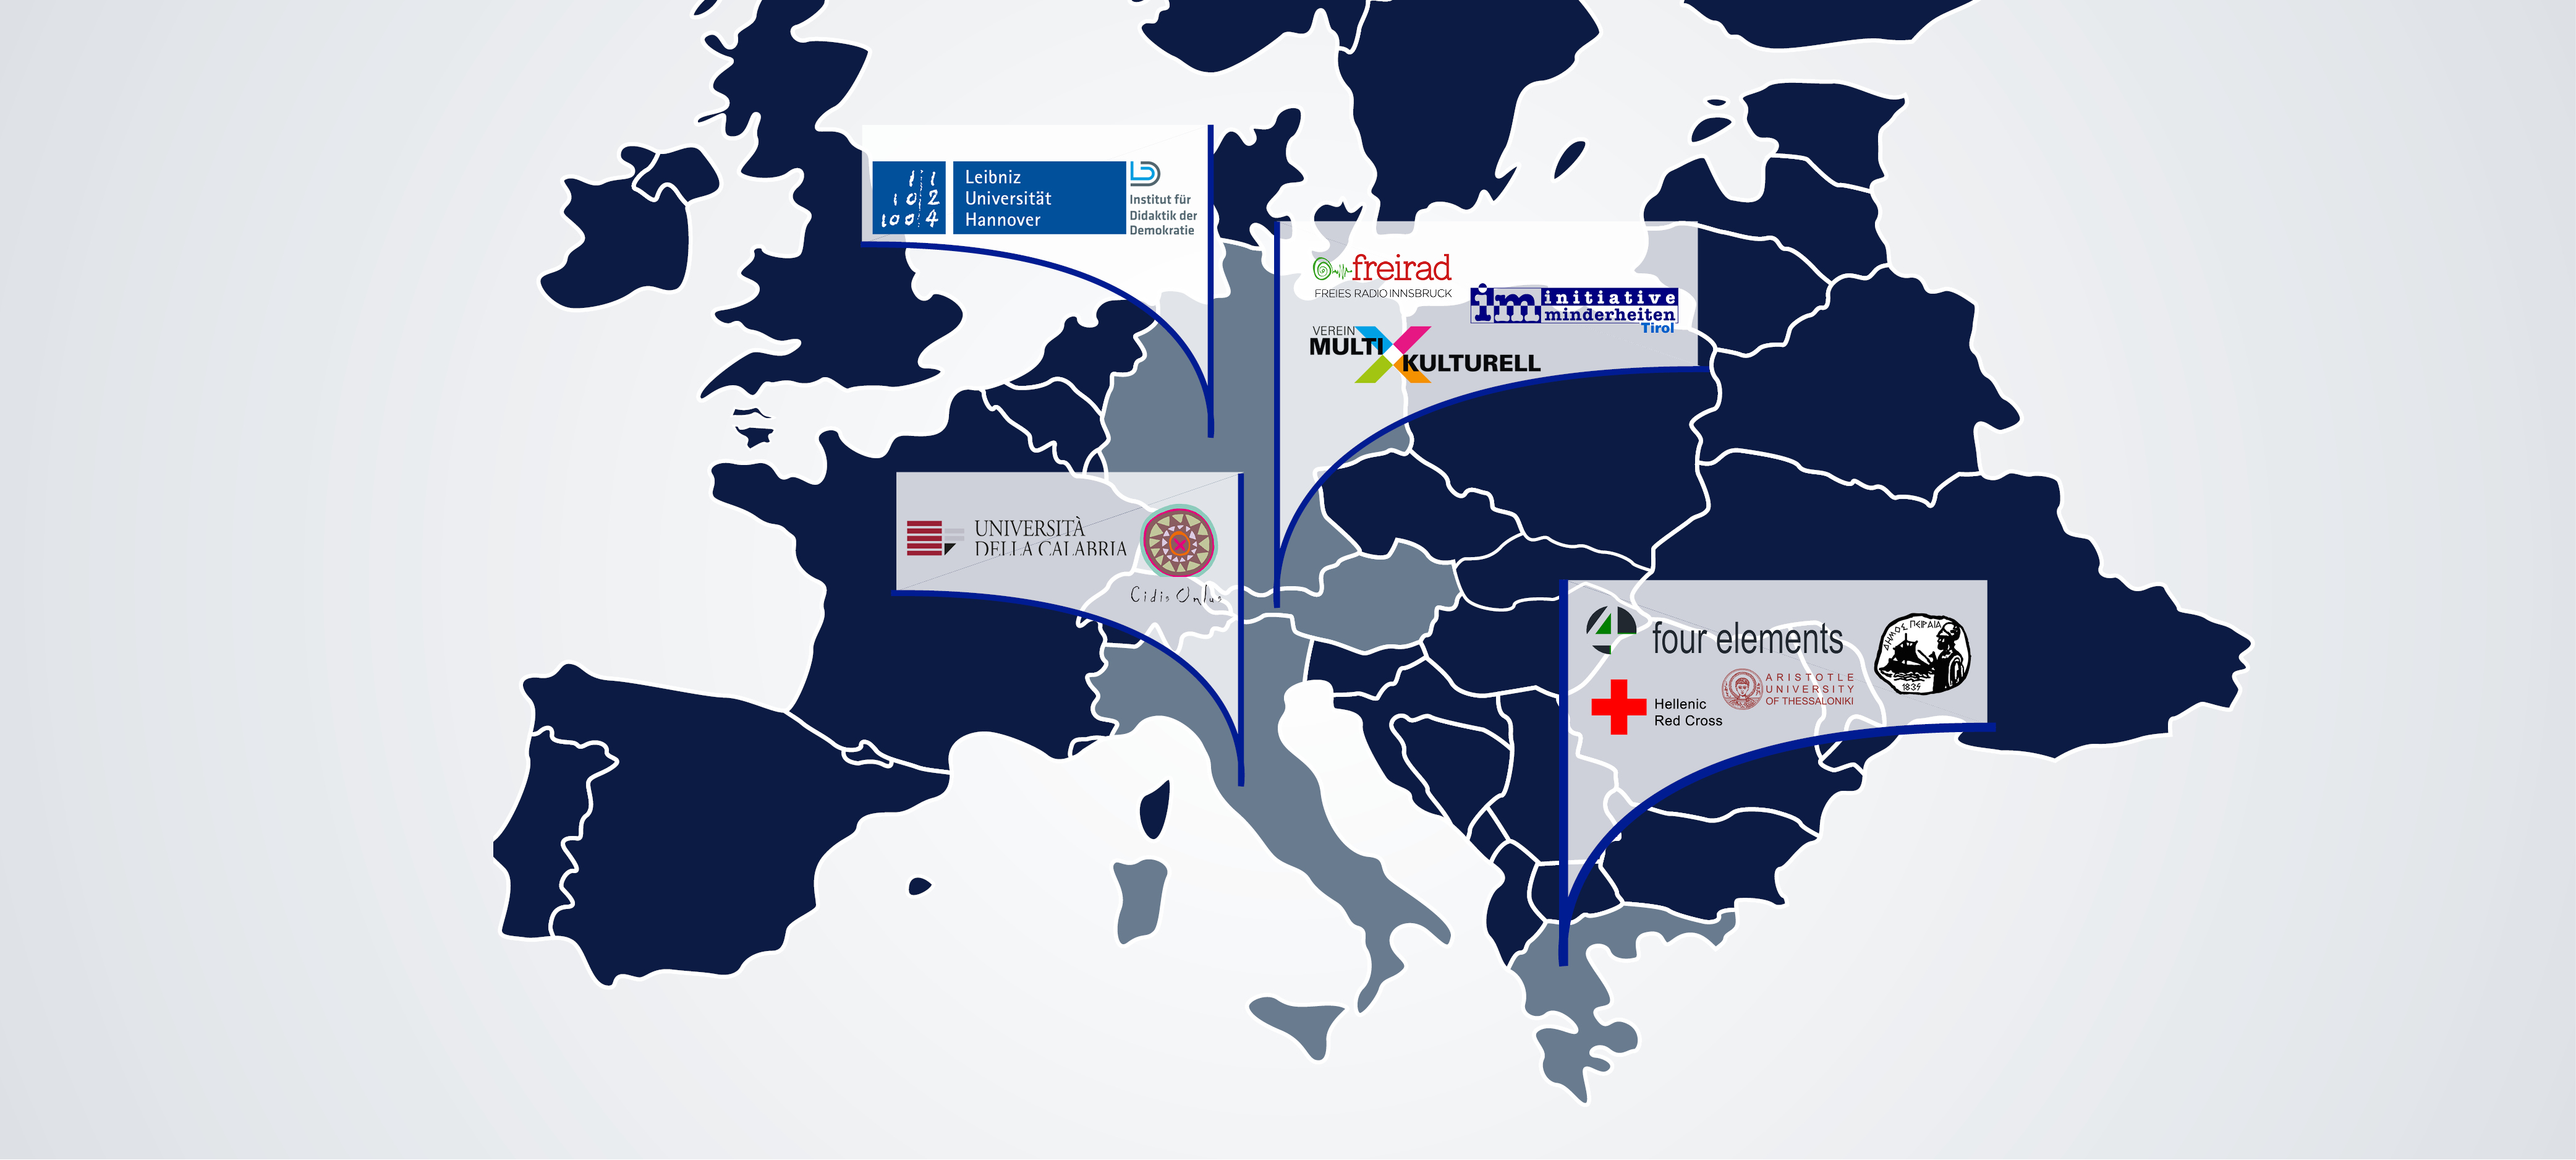 Karte von Europa mit Logos der Partnerorganisationen in ihren jeweiligen Ländern